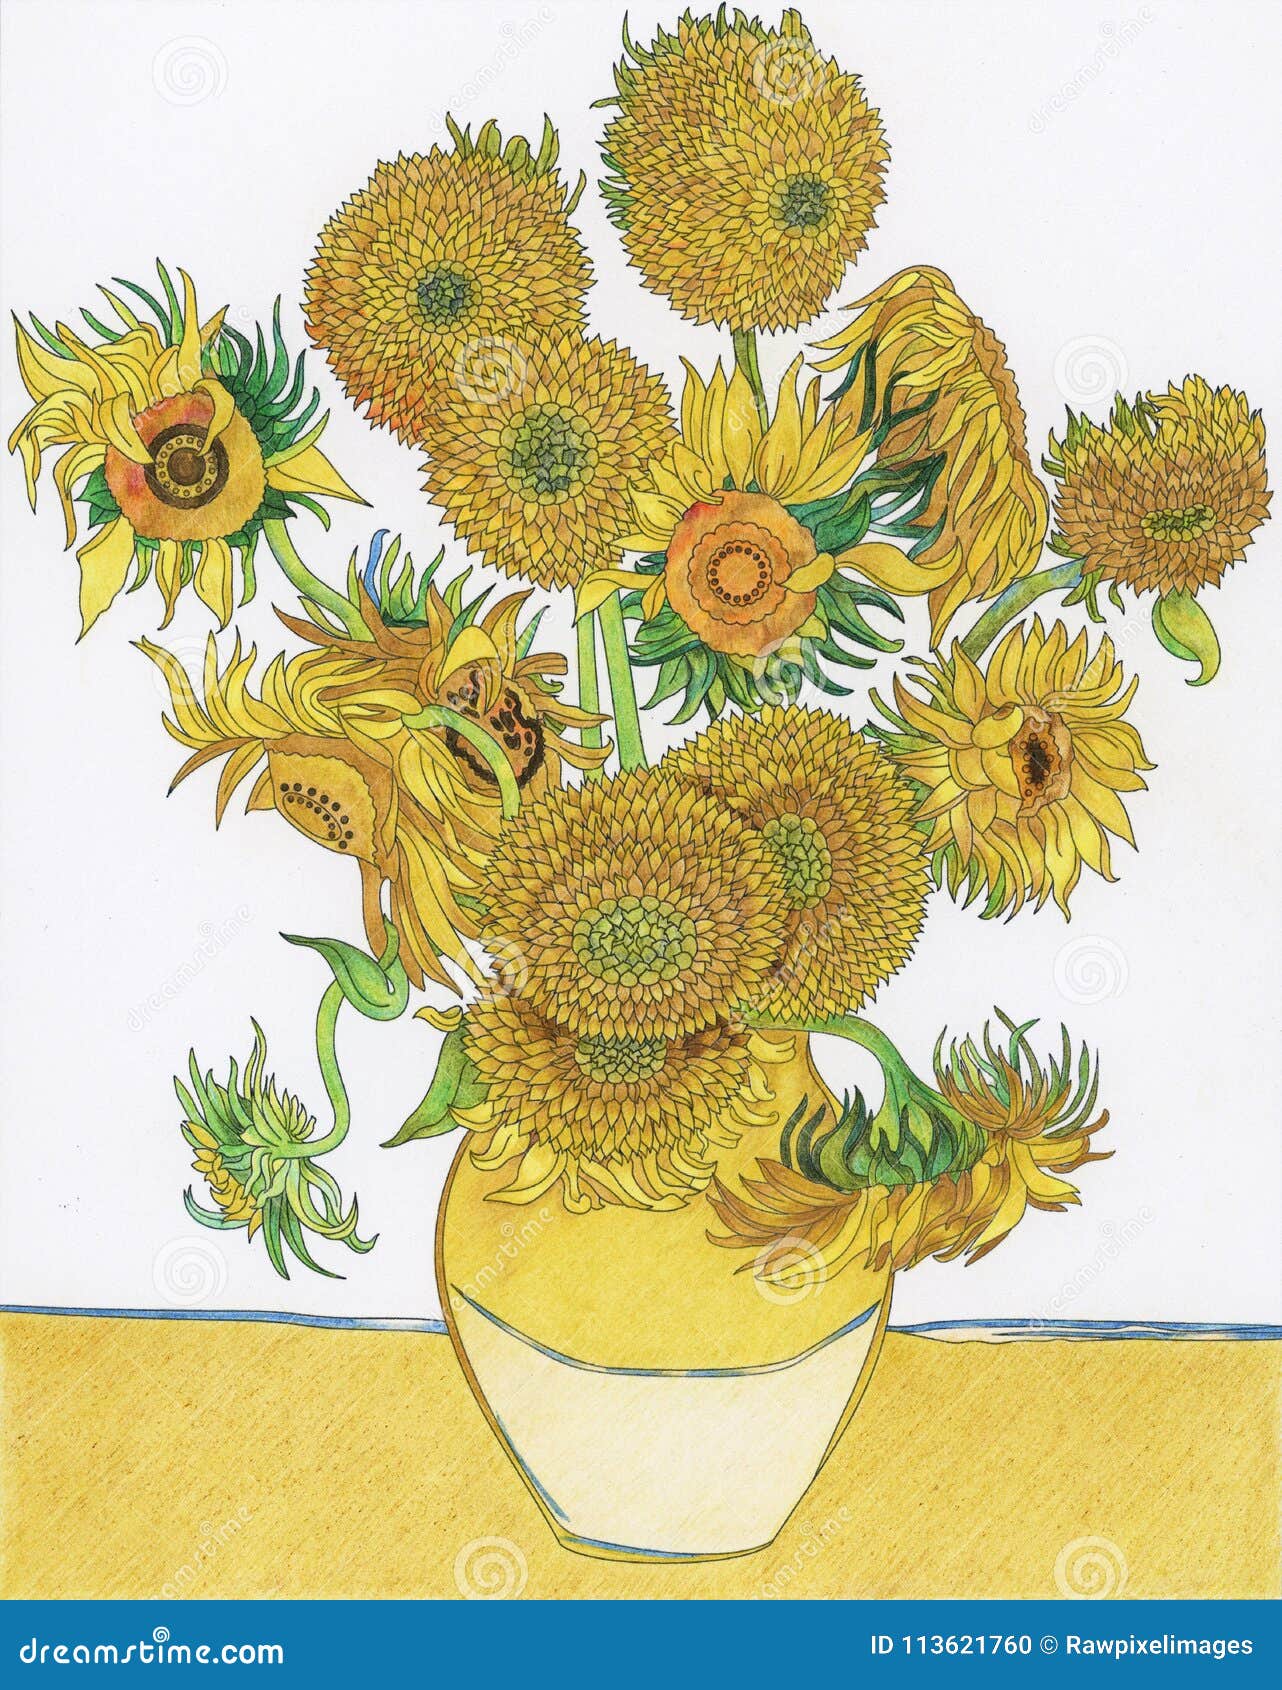 Pagina Adulta Di Coloritura Del Girasole Del S Di Van Gogh Illustrazione Di Stock Illustrazione Di Artista Pittura